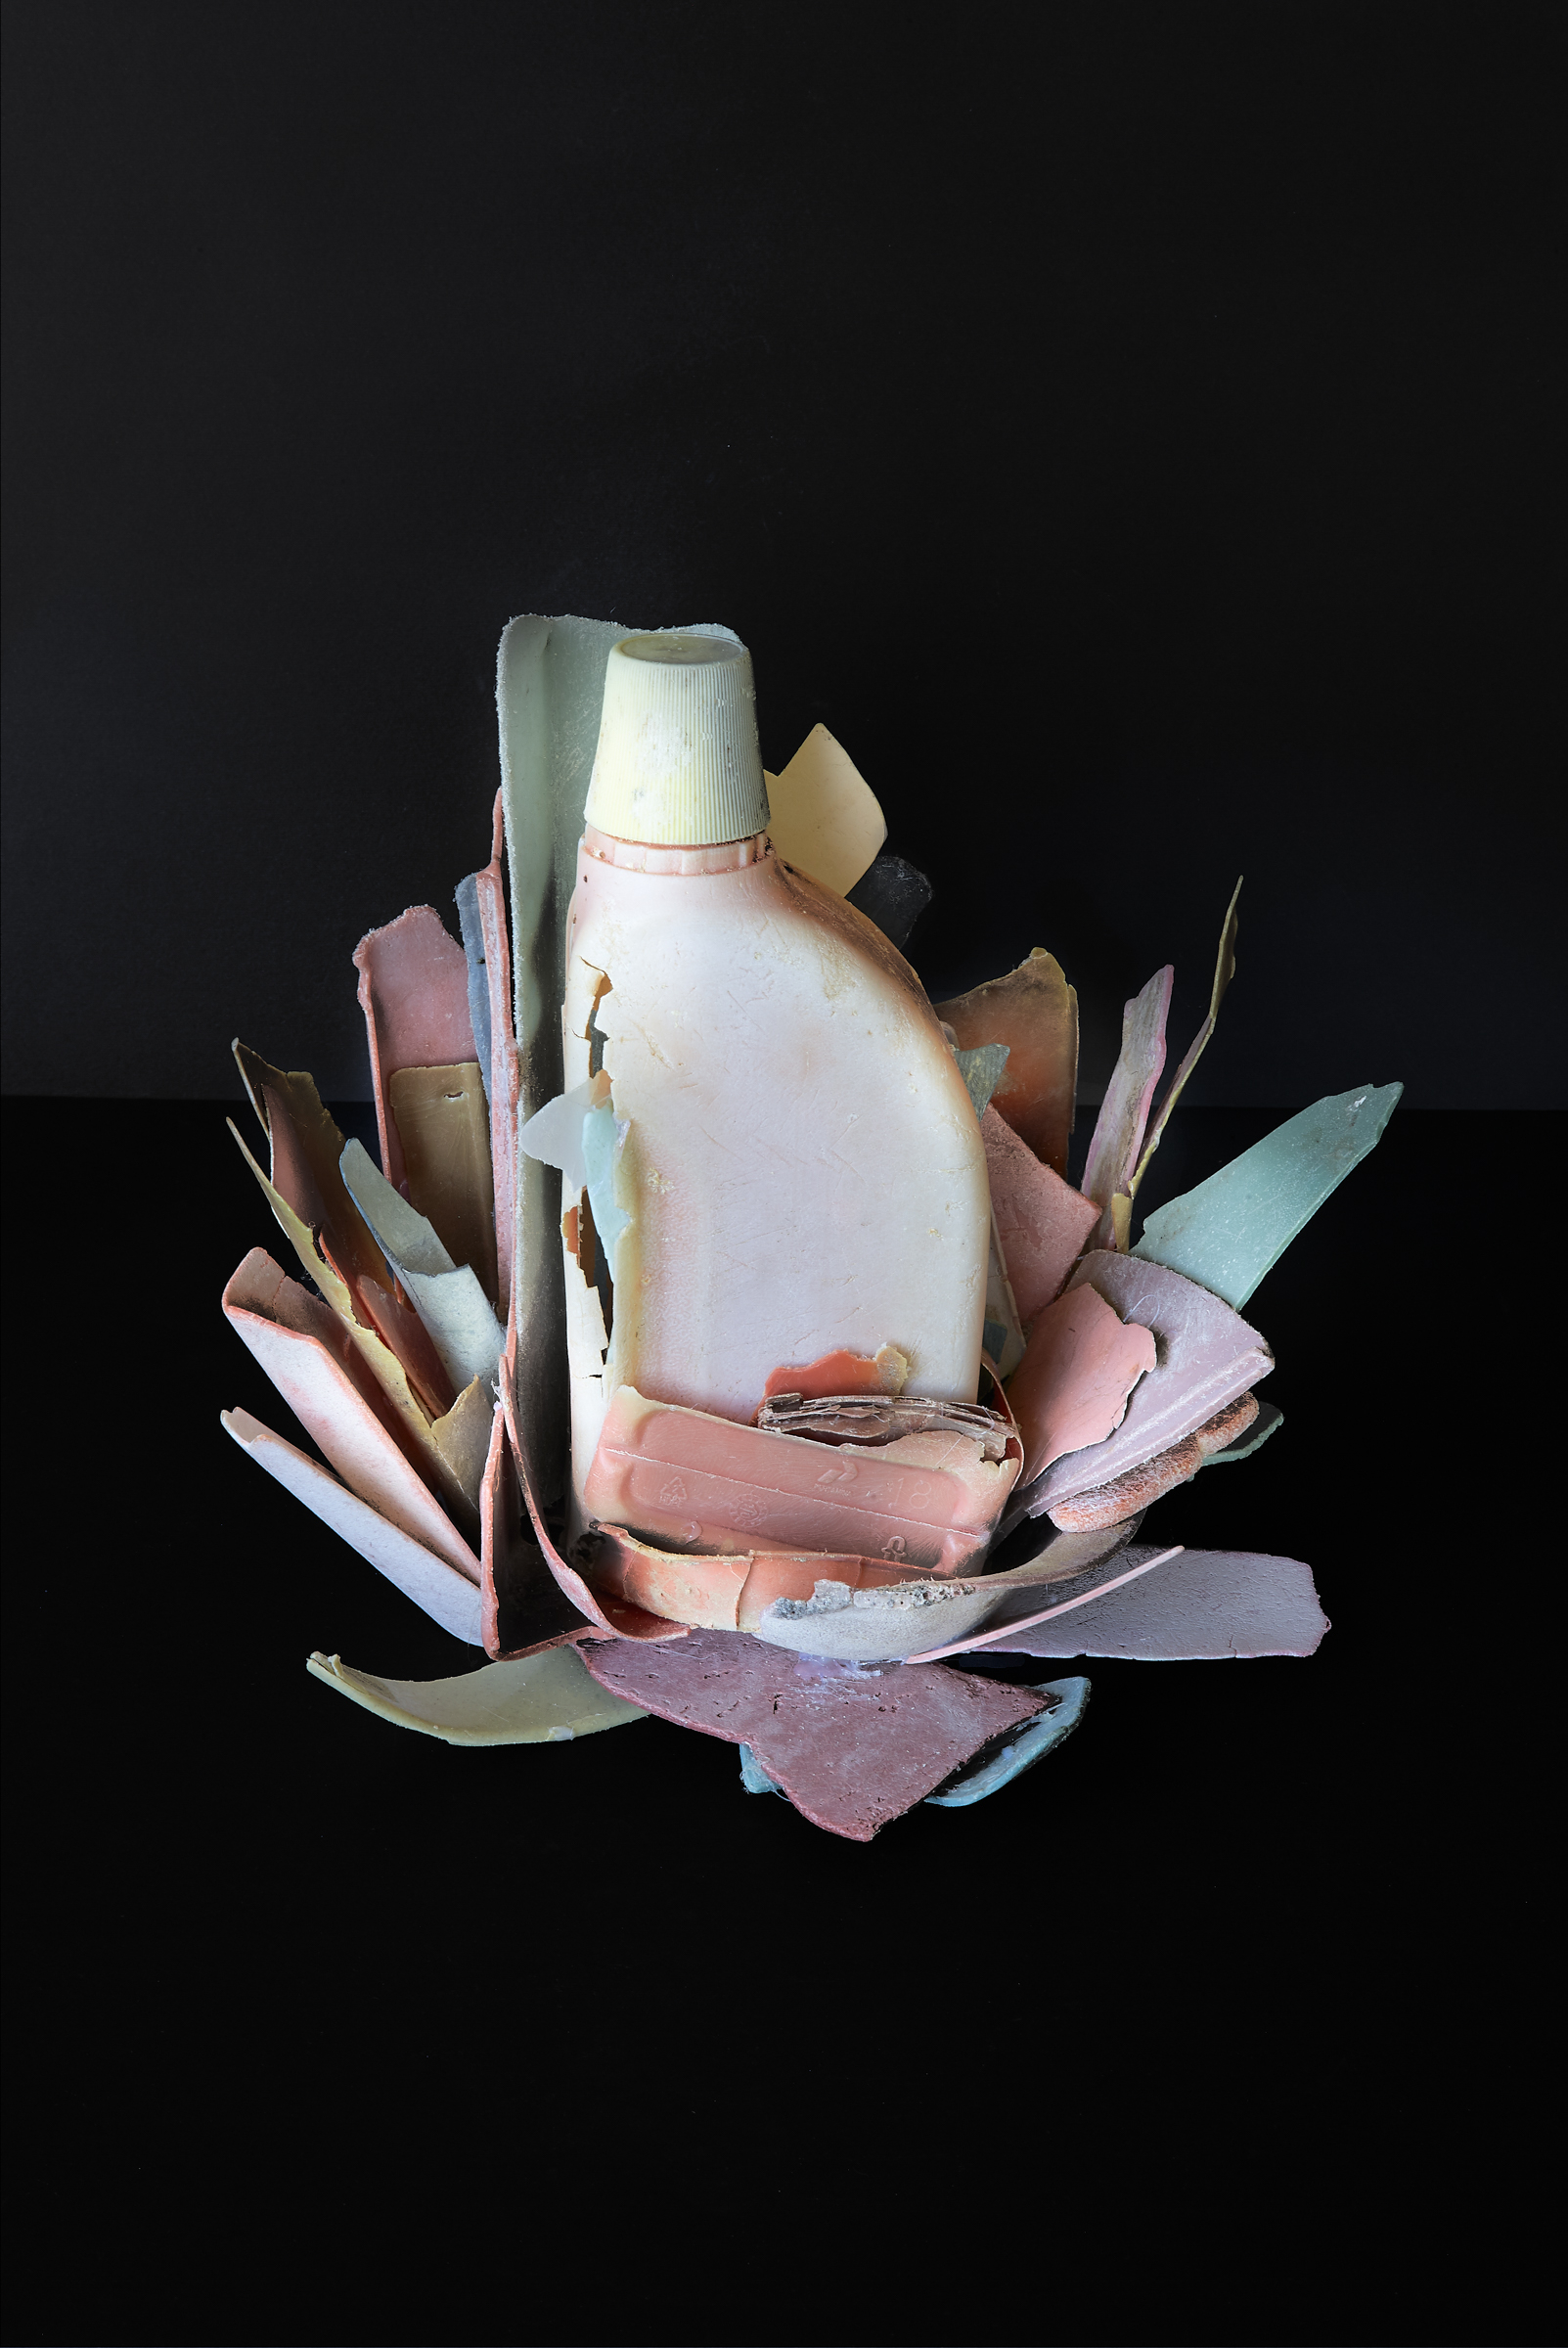 Thirza Schaap, lotus, 2019. Courtesy of the artist and Bildhalle Zürich + Amsterdam